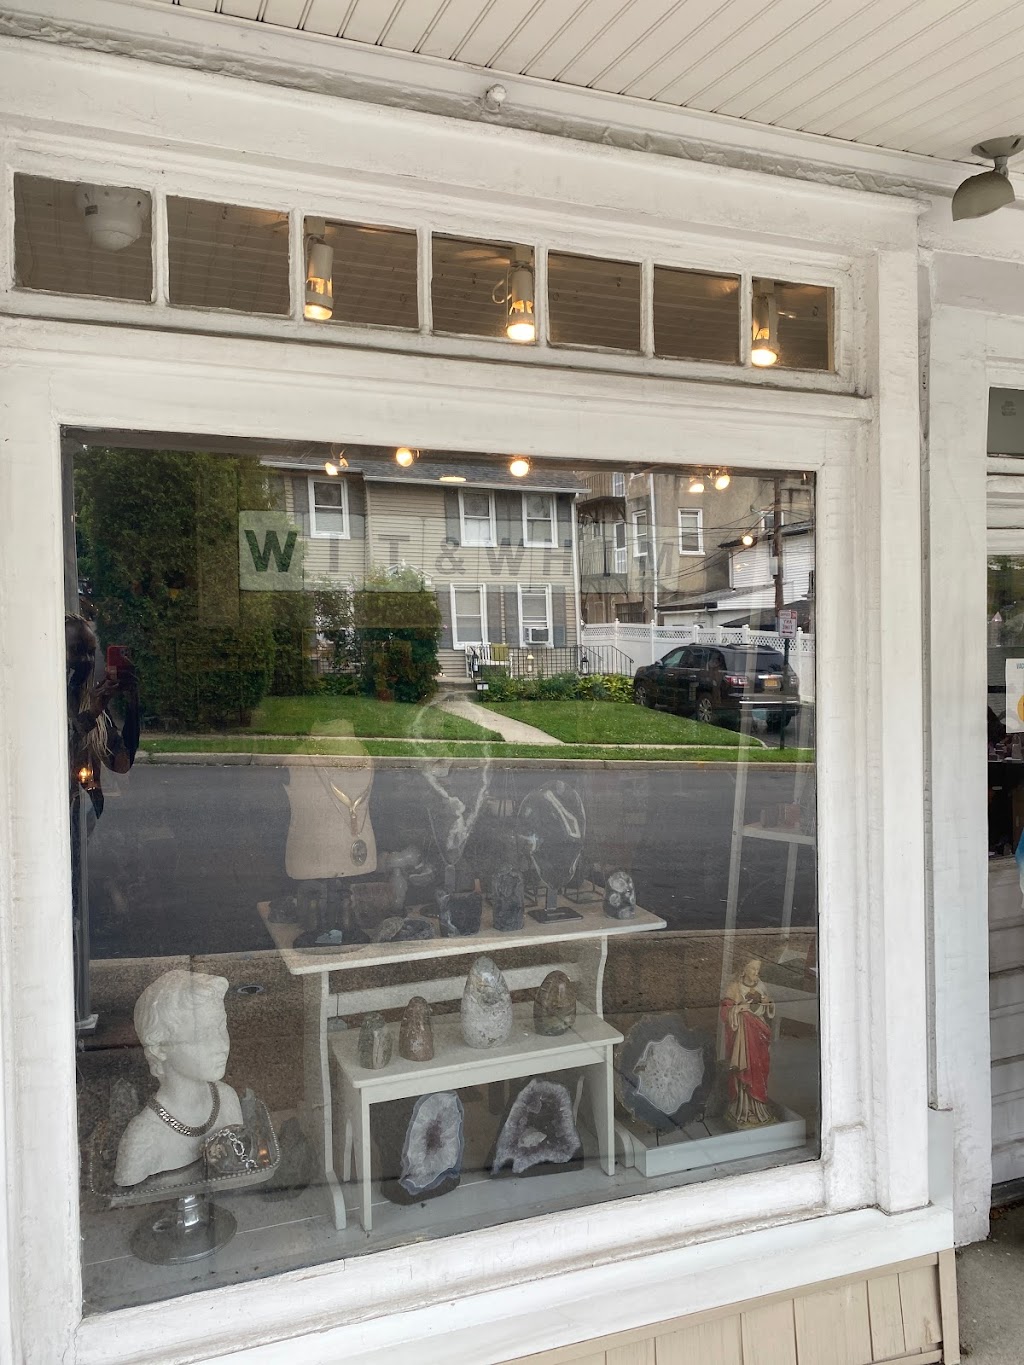 wit & whim | 6 Carlton Ave, Port Washington, NY 11050 | Phone: (516) 944-9200